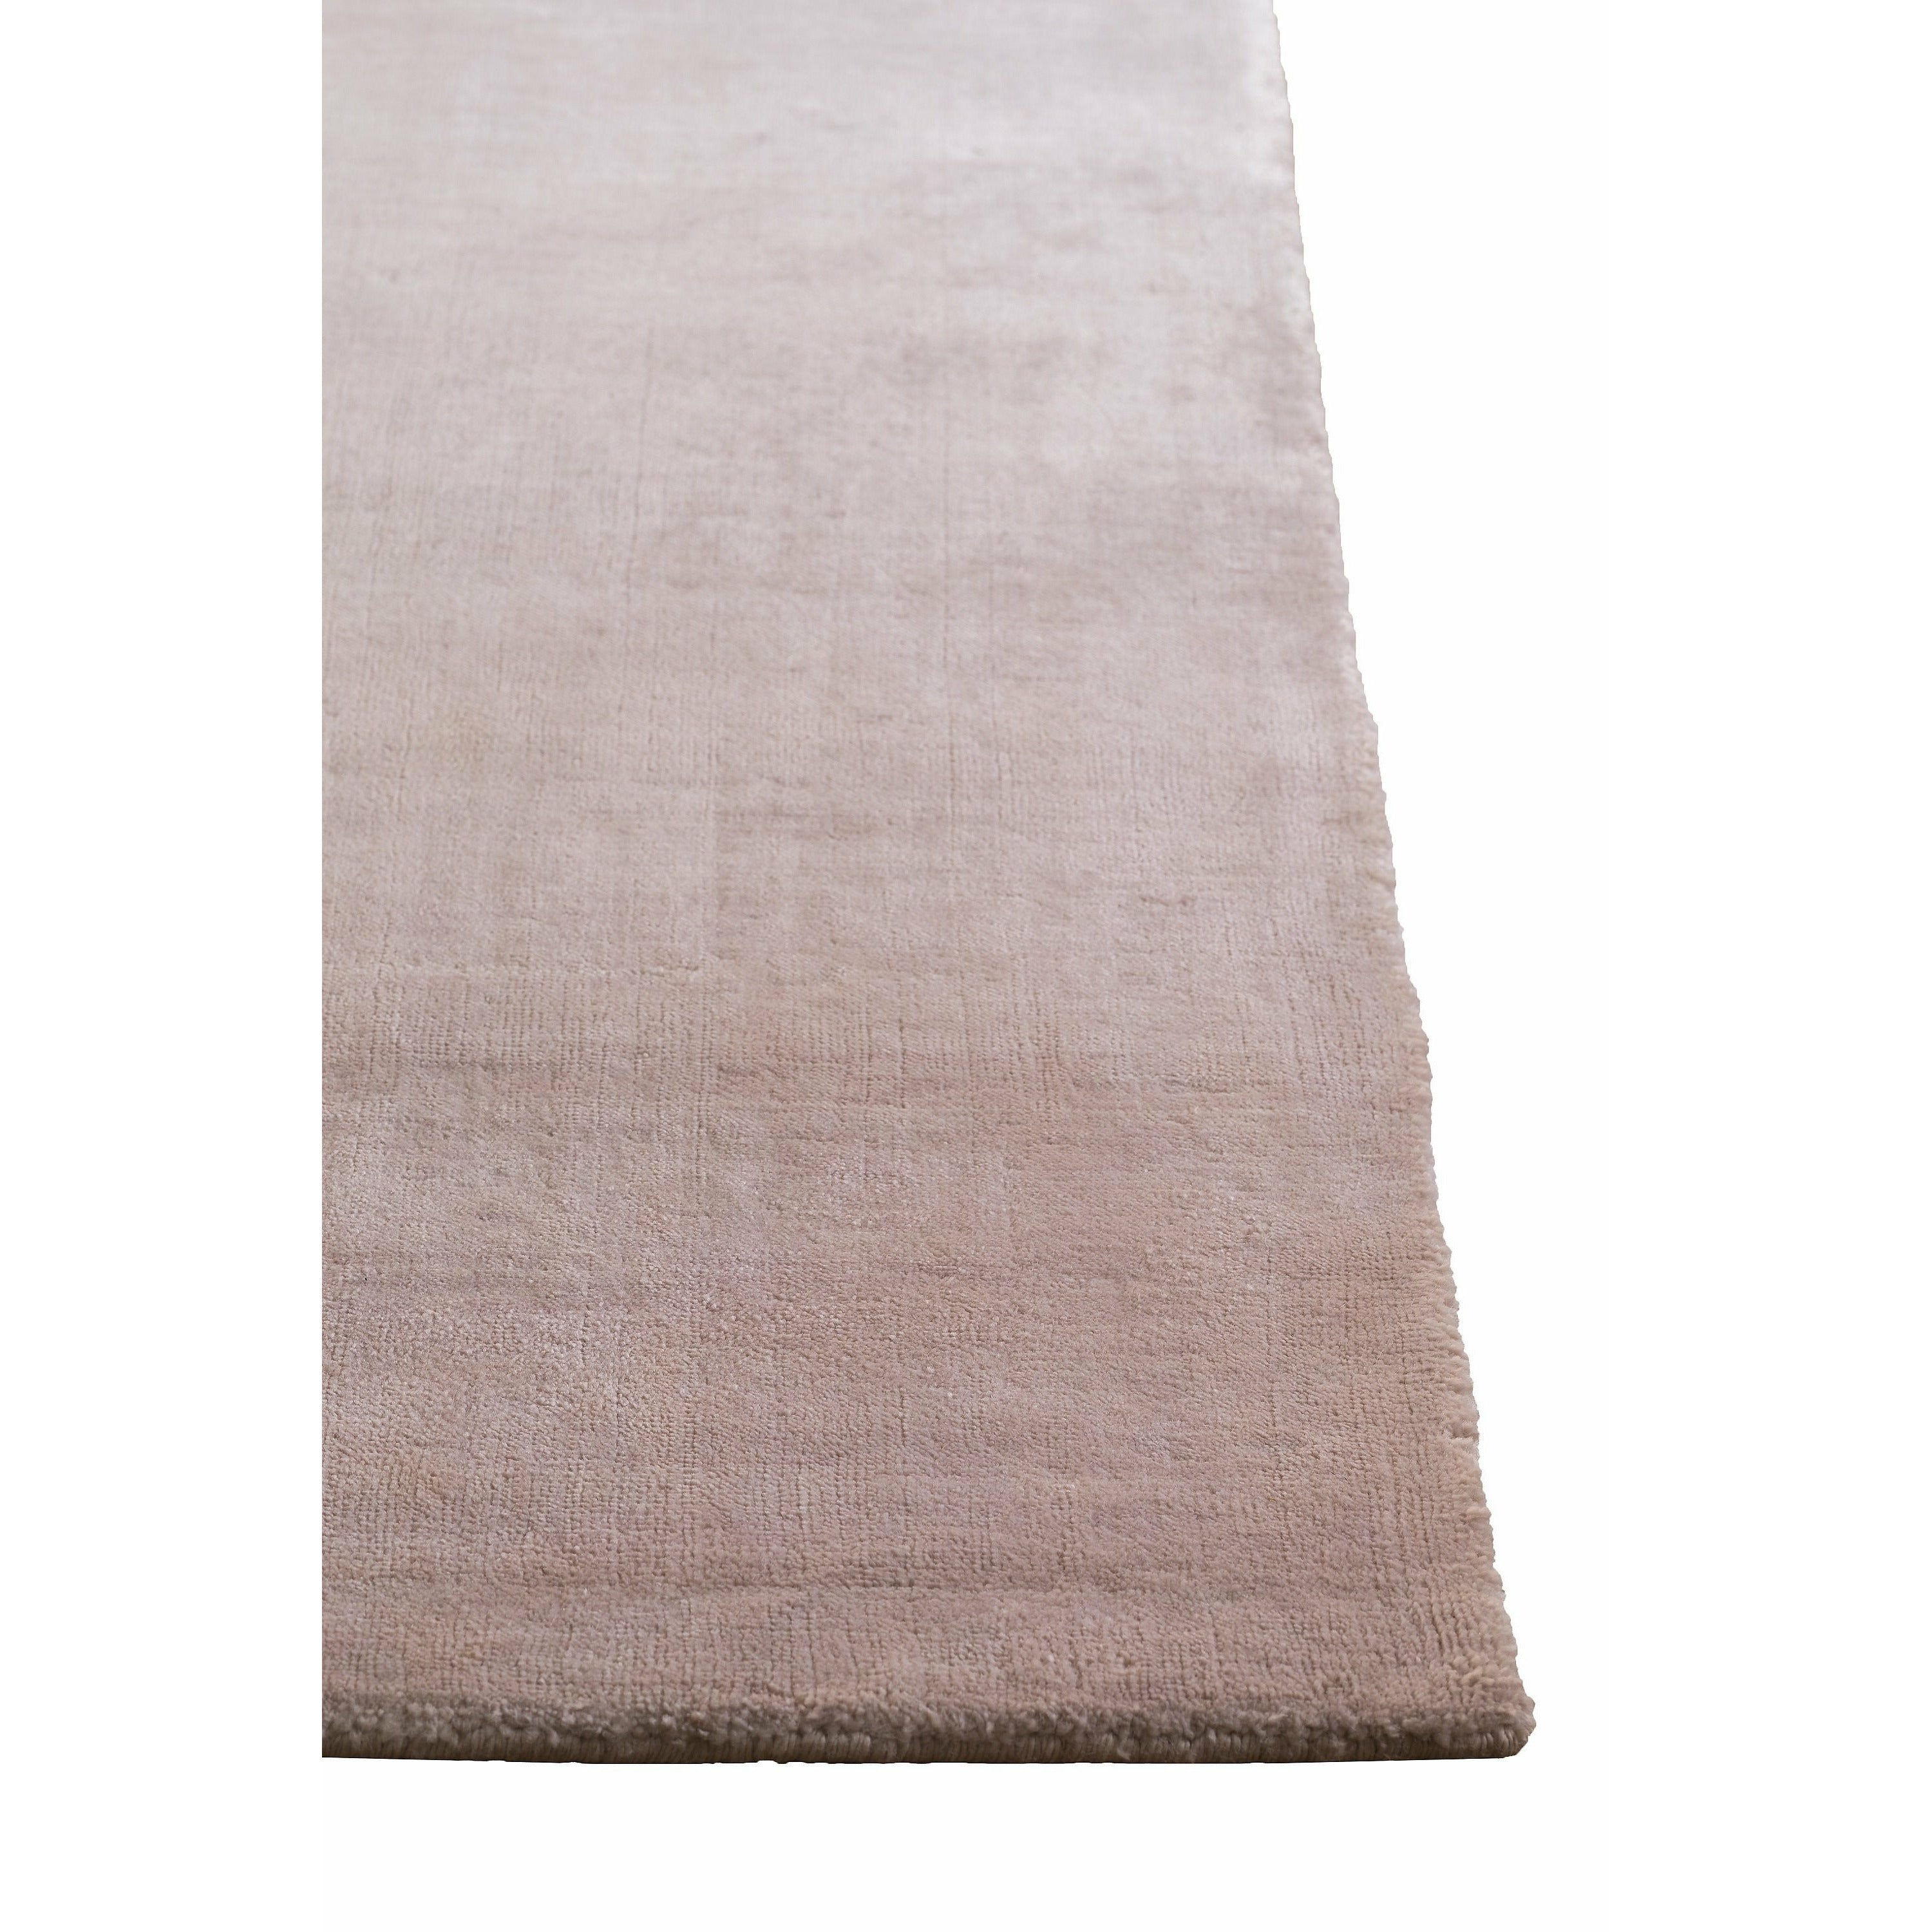 Massimo Bambus tæppe rose støv, 250x300 cm